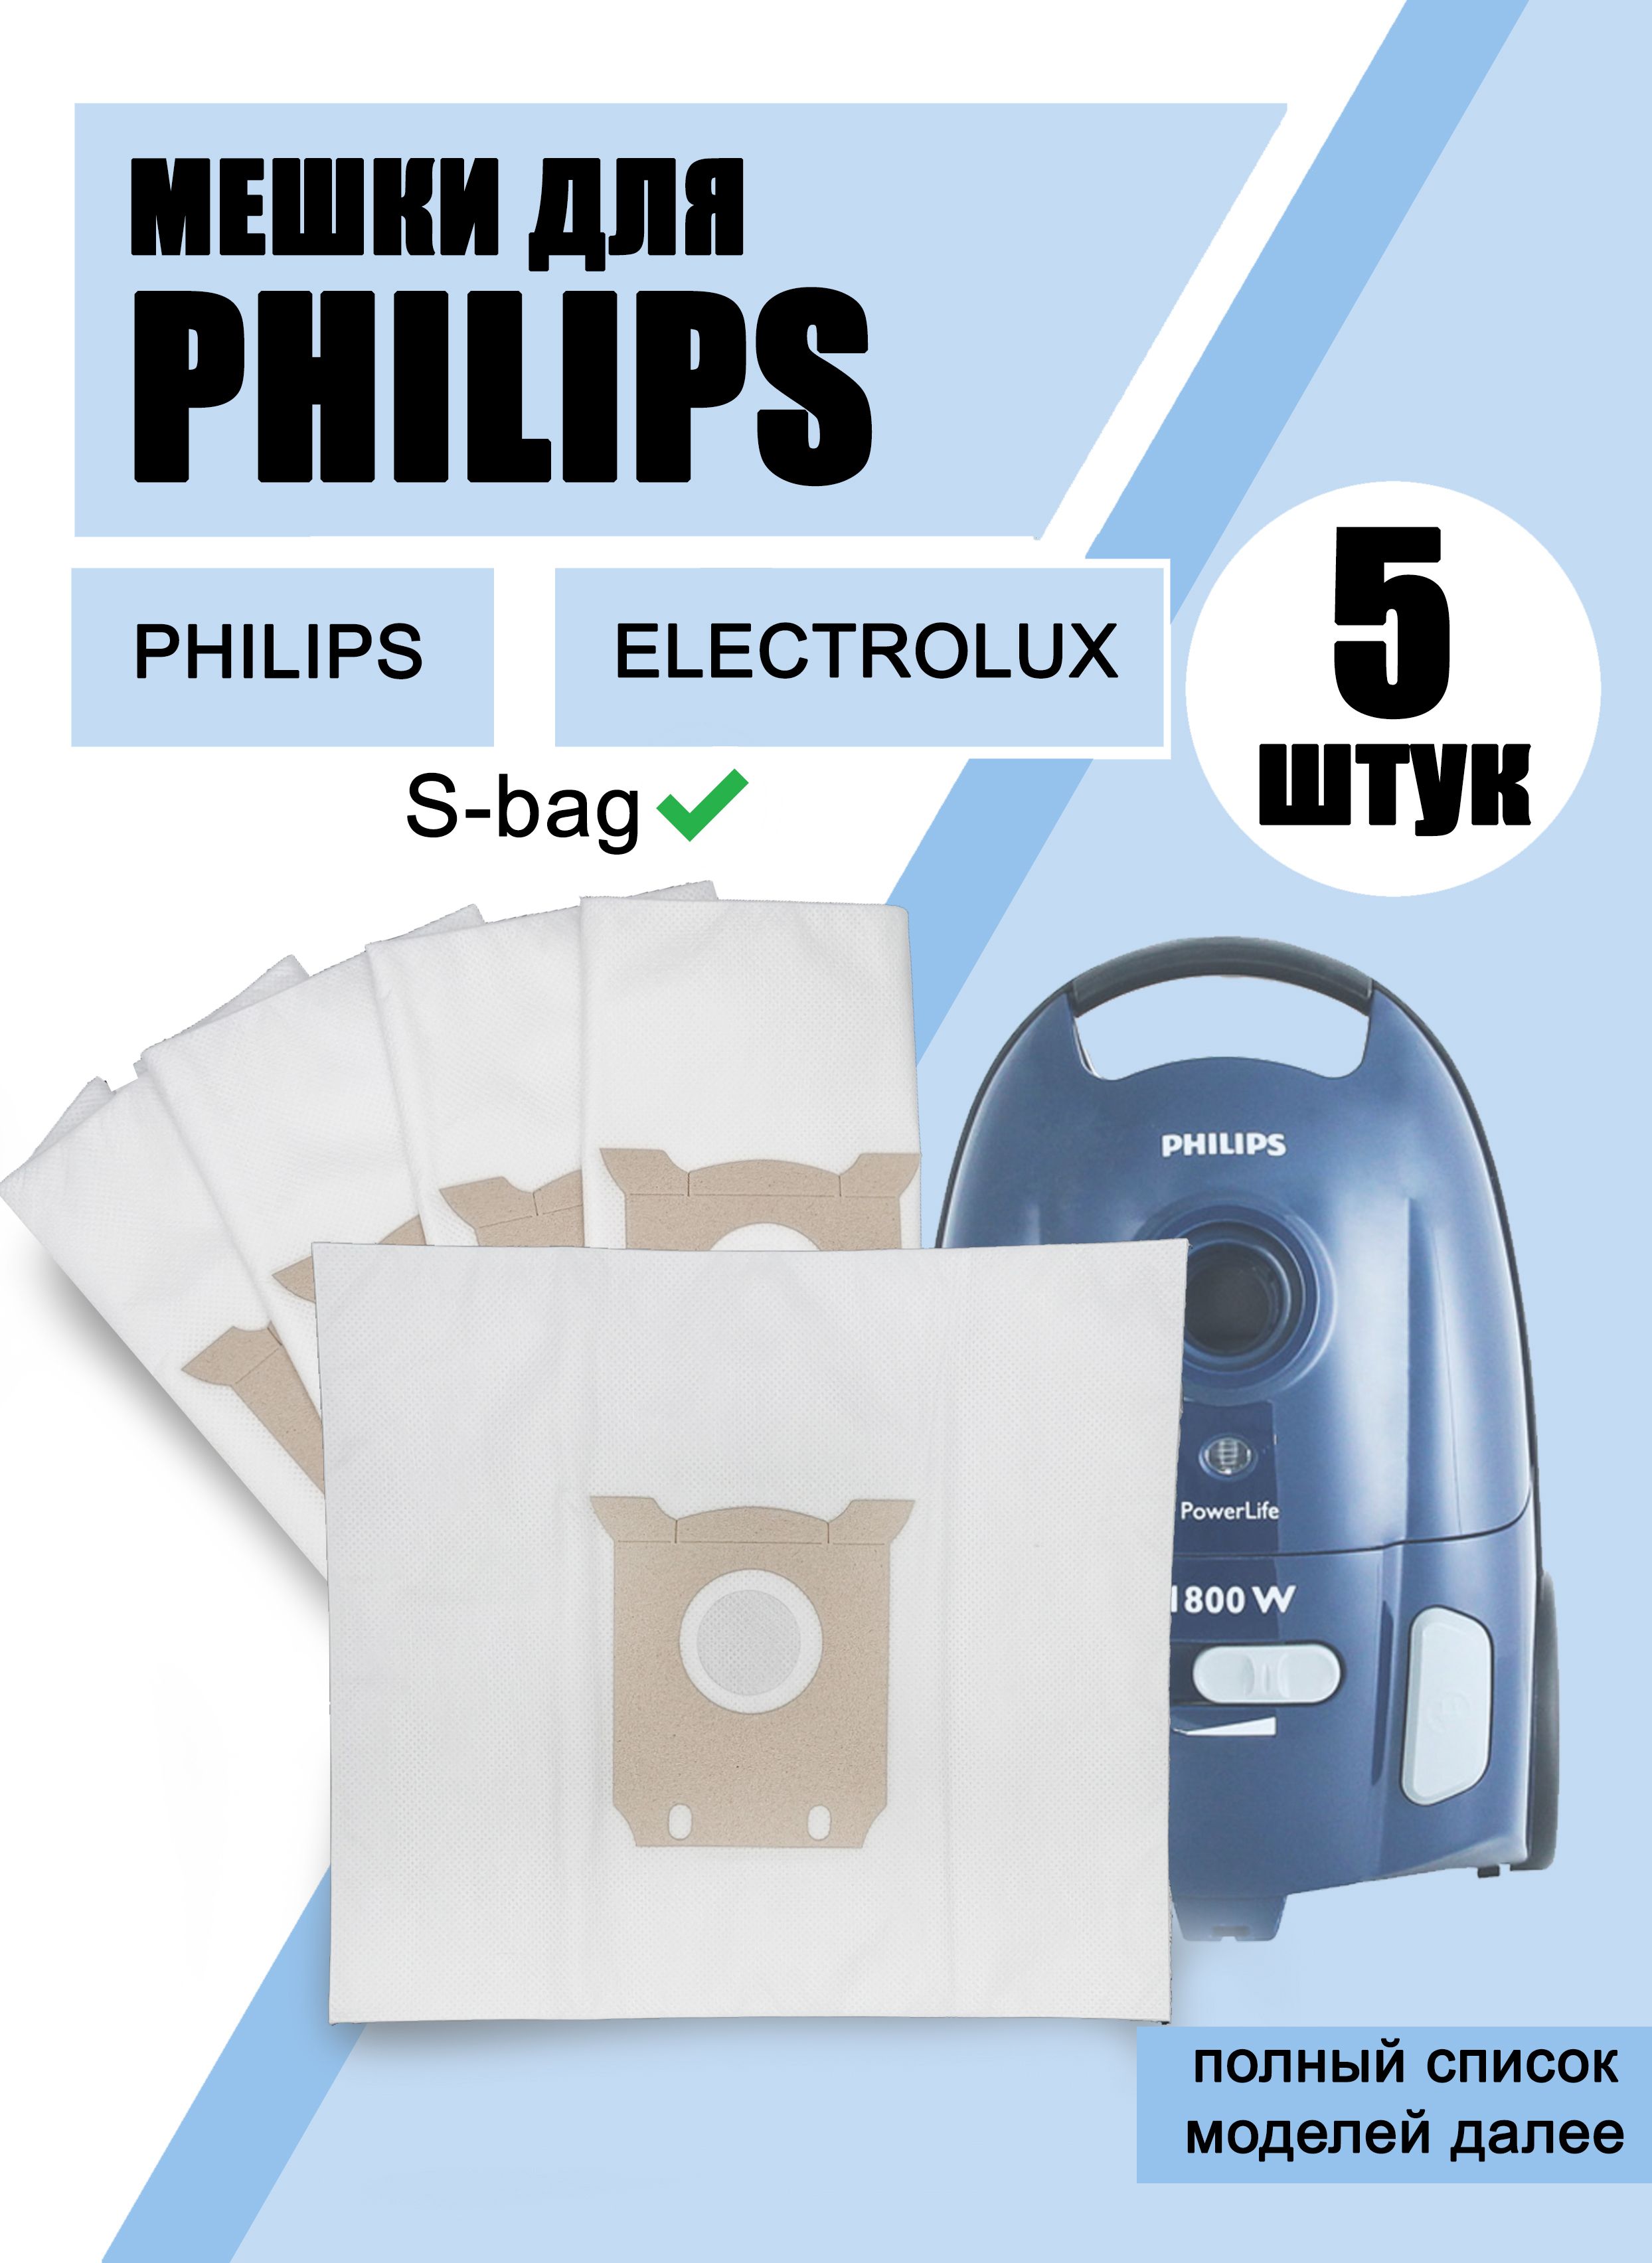 Пылесборник филипс. Philips FC 9170 мешок. Мешок пылесборник пылесоса Филипс zx0043s (одноразовый). XT-503 мешок-пылесборник. Пылесос Филипс с мешком.